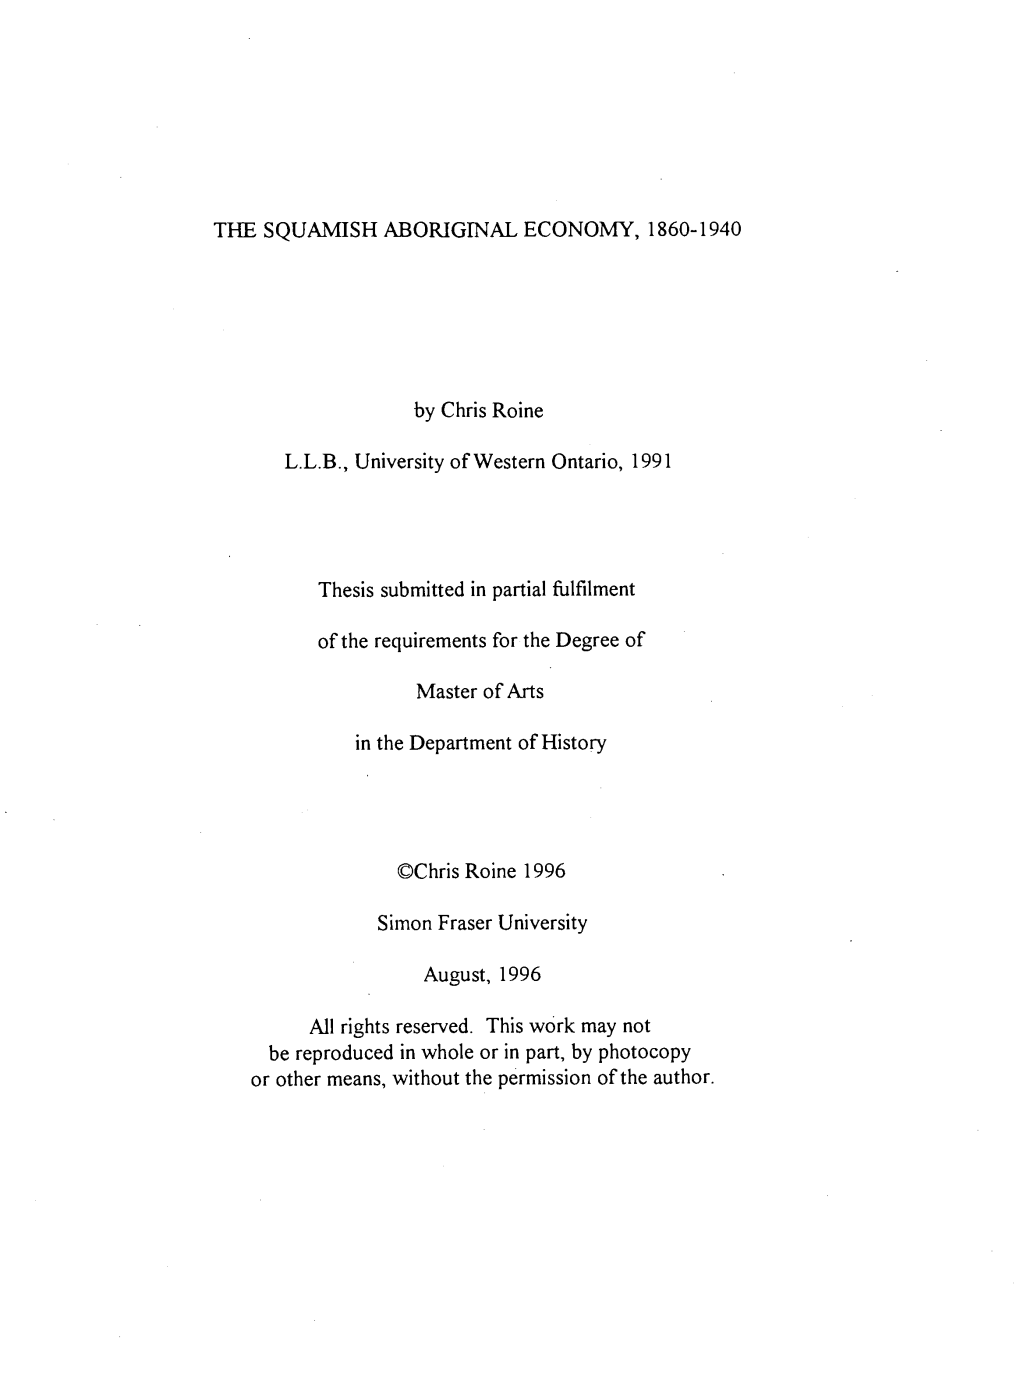 The Squamish Aboriginal Economy, 1860-1940